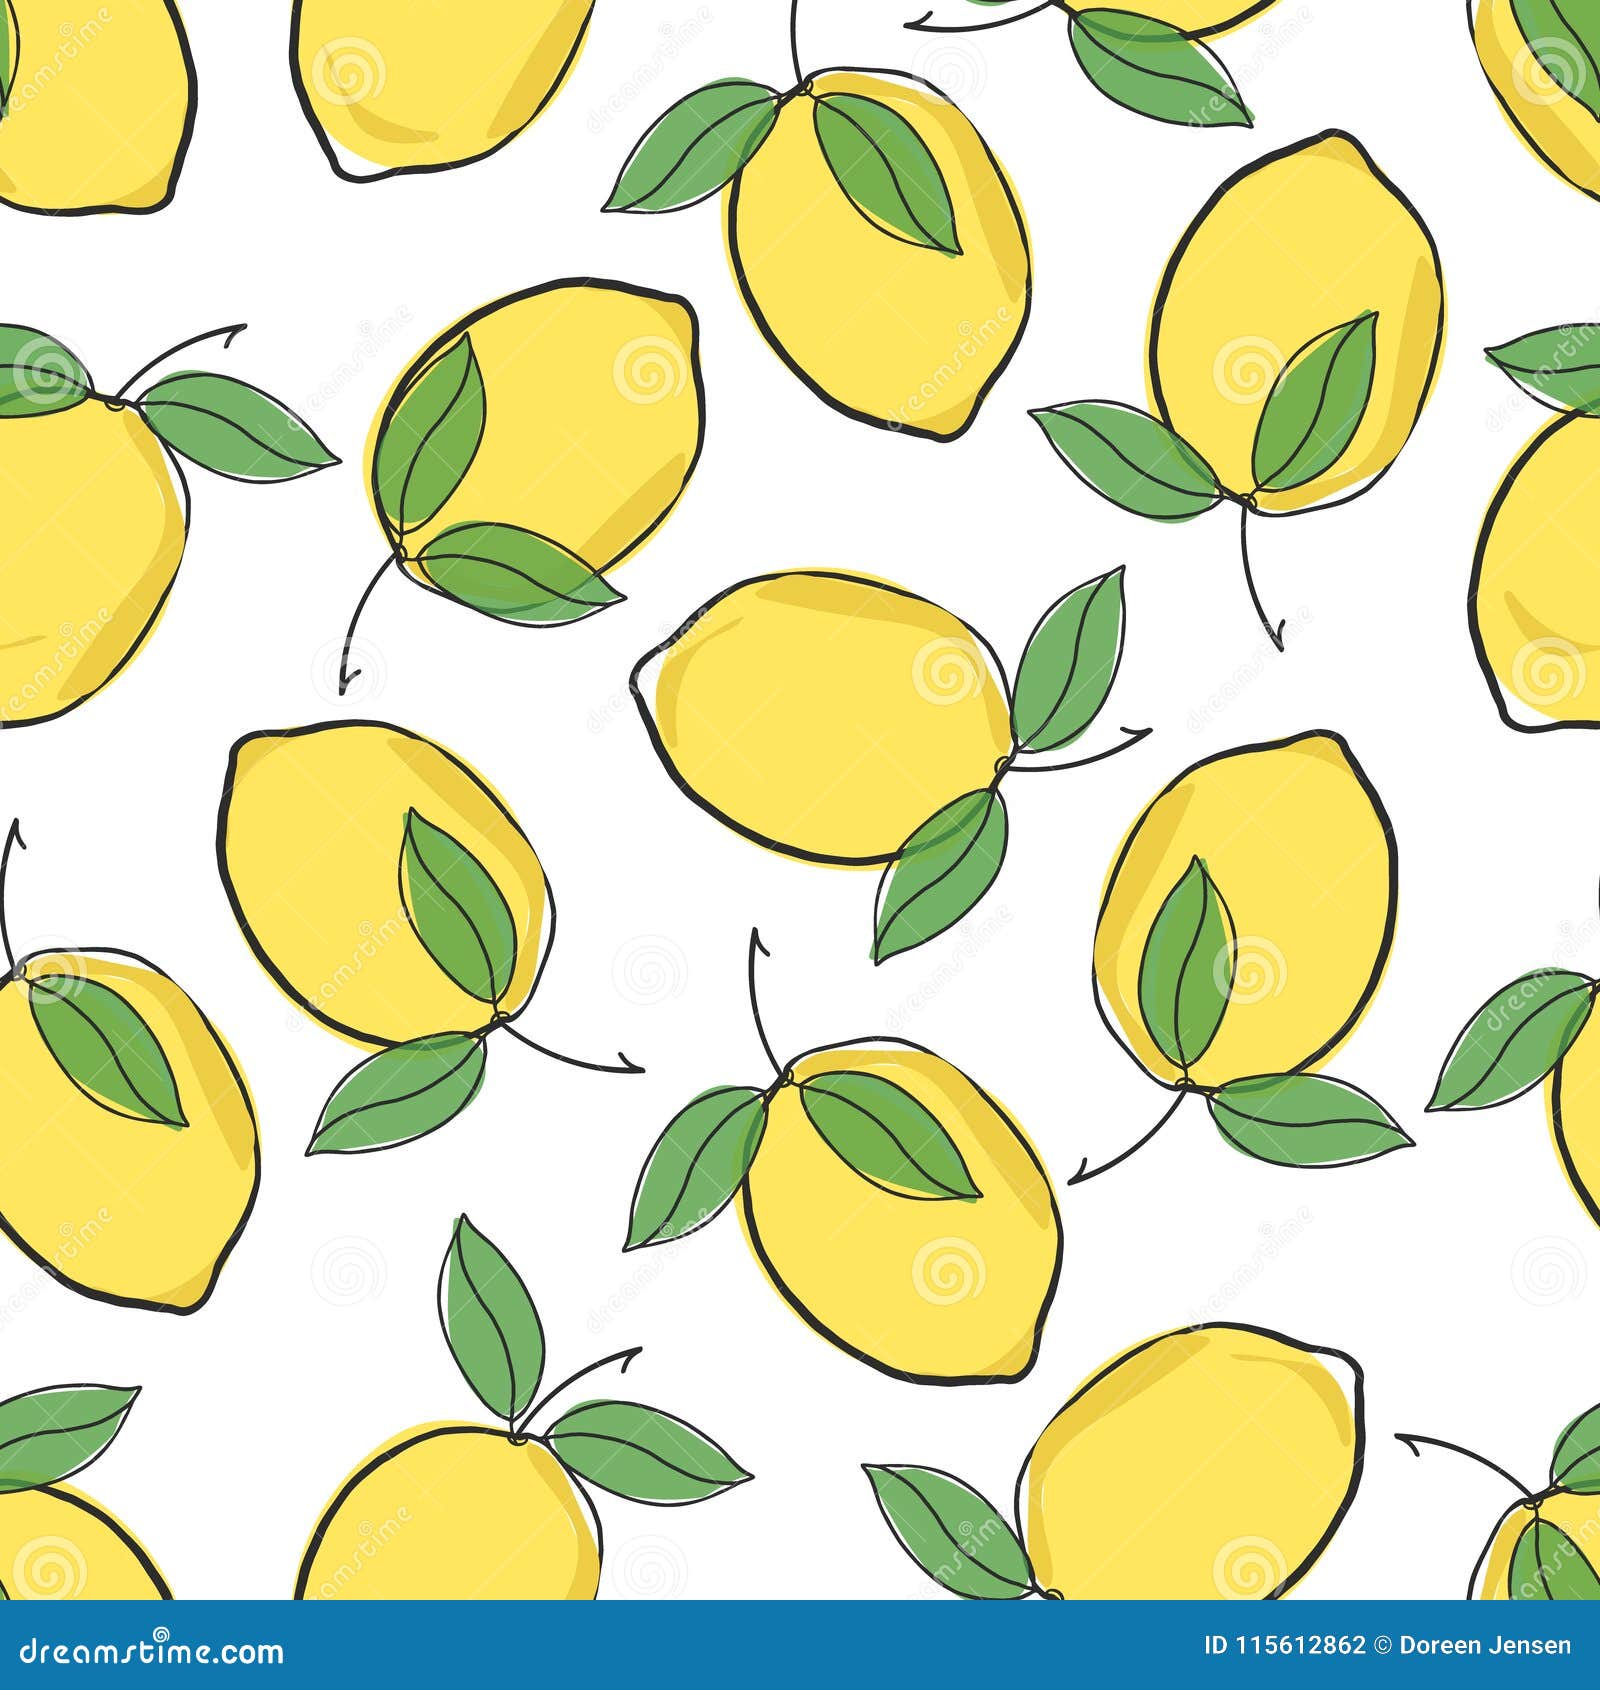 26 Lemon Backgrounds  WallpaperSafari